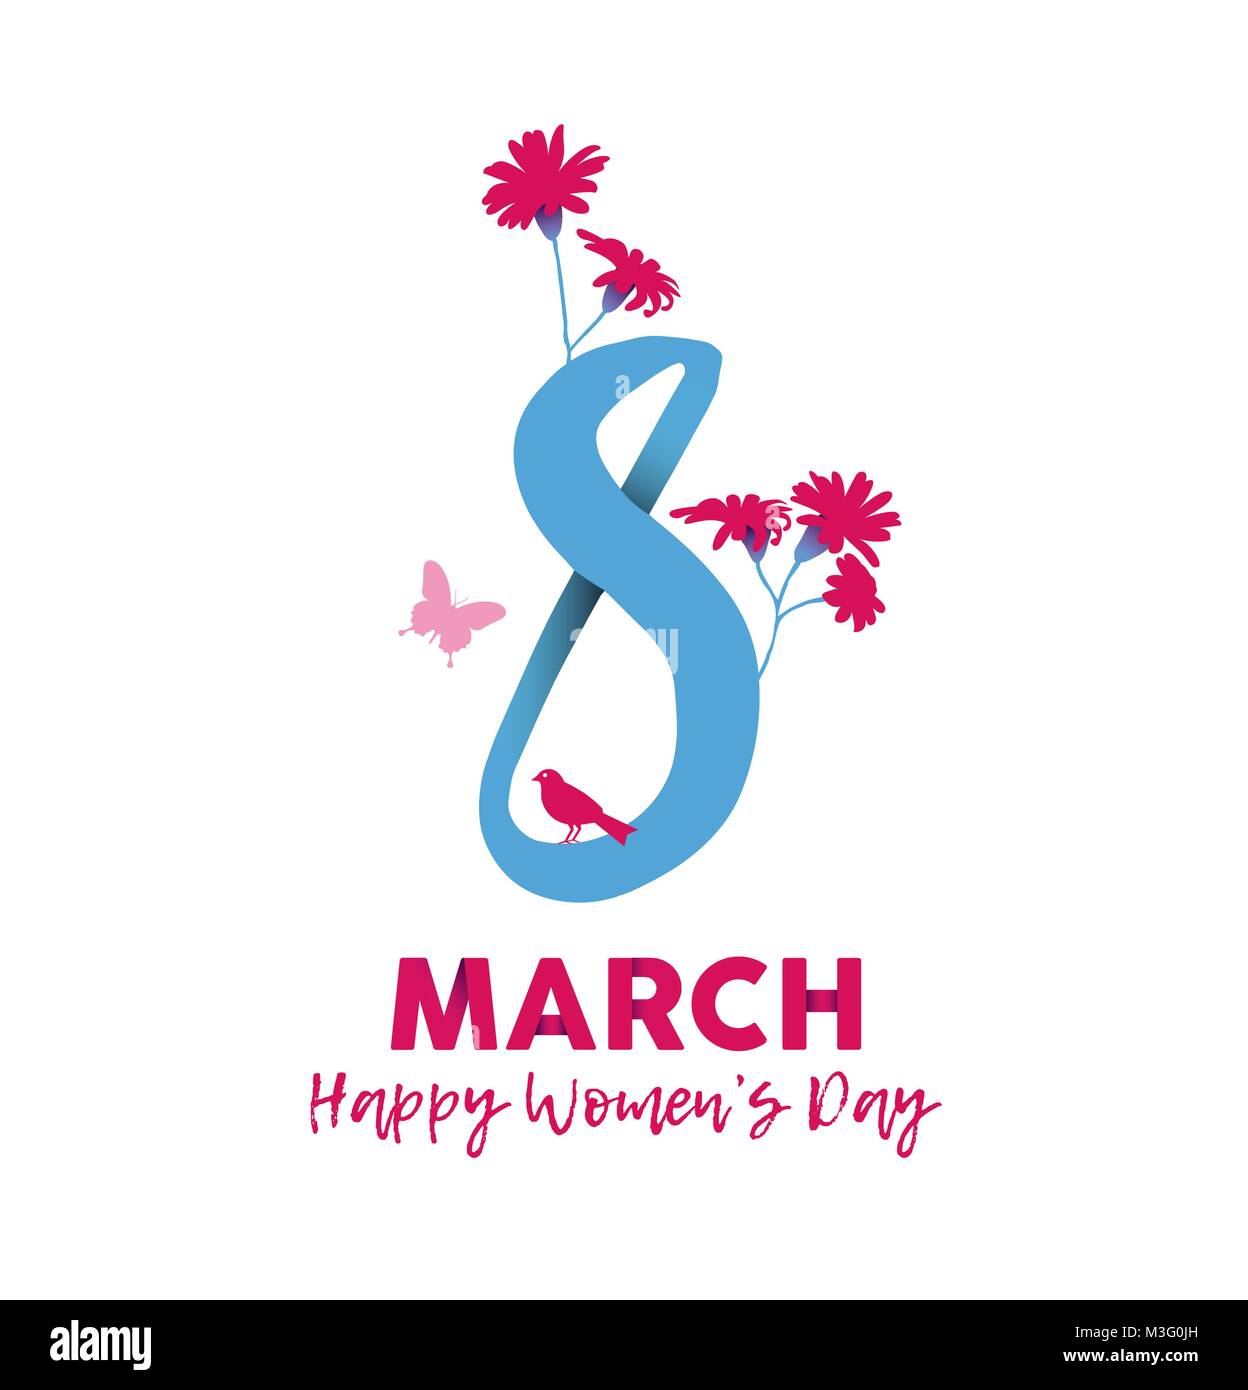 Heureuse Journée de la Femme 2018, cartes florales illustration féminine avec texte 8 mars devis et fleurs de printemps dans un style dessiné à la main. Vecteur EPS10. Illustration de Vecteur